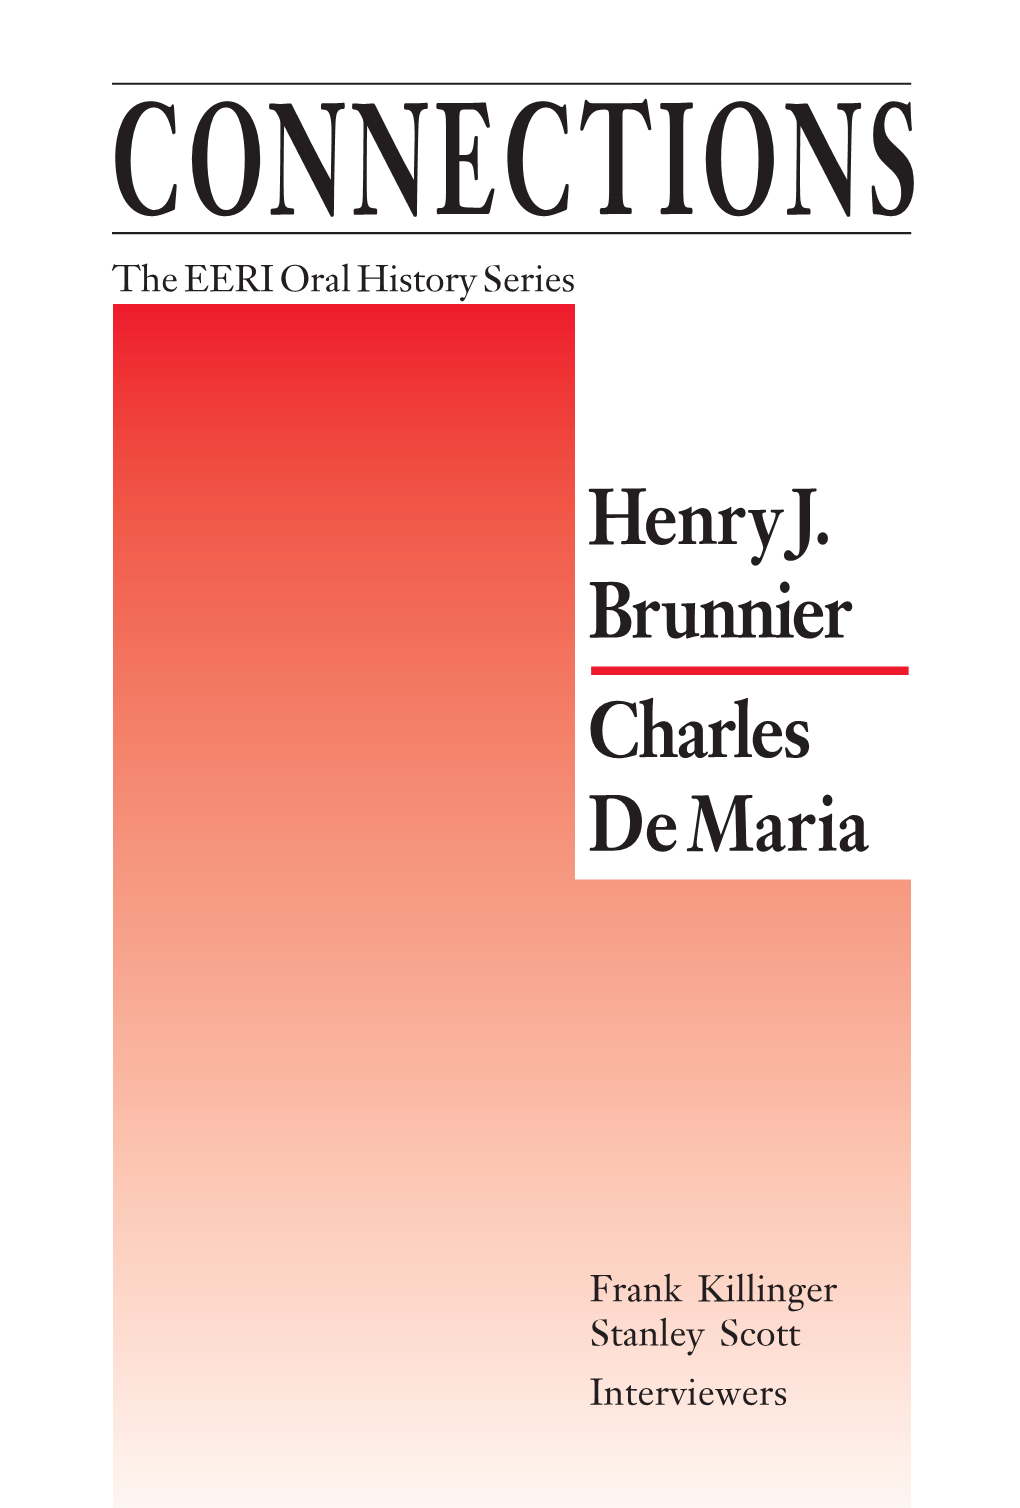 EERI Oral History Series, Vol. 8, Henry J. Brunnier and Charles Demaria